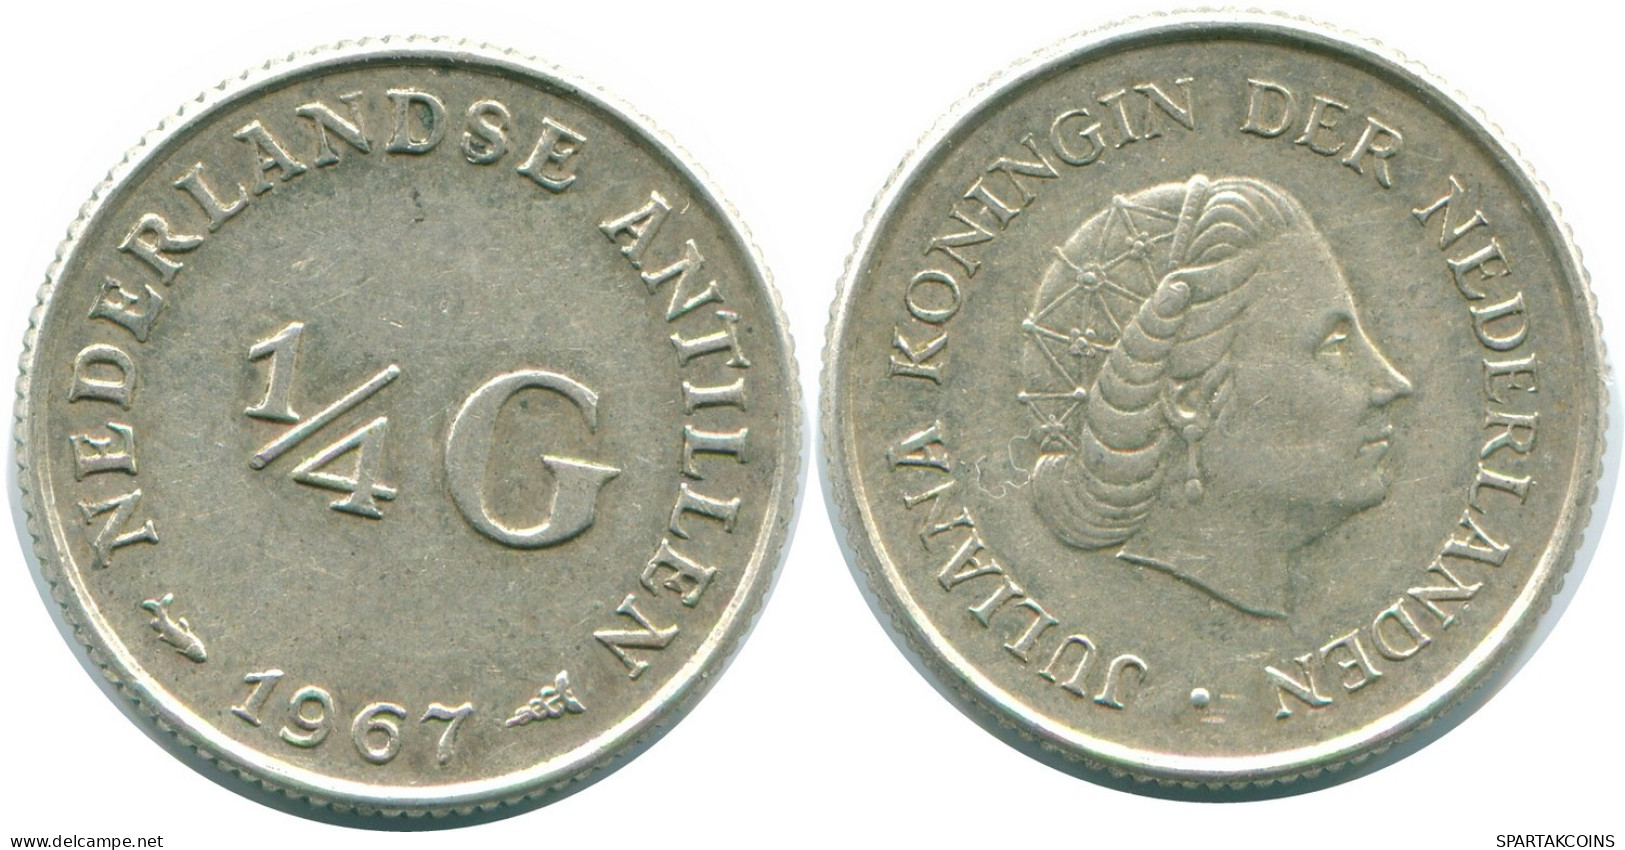 1/4 GULDEN 1967 NIEDERLÄNDISCHE ANTILLEN SILBER Koloniale Münze #NL11480.4.D.A - Antilles Néerlandaises